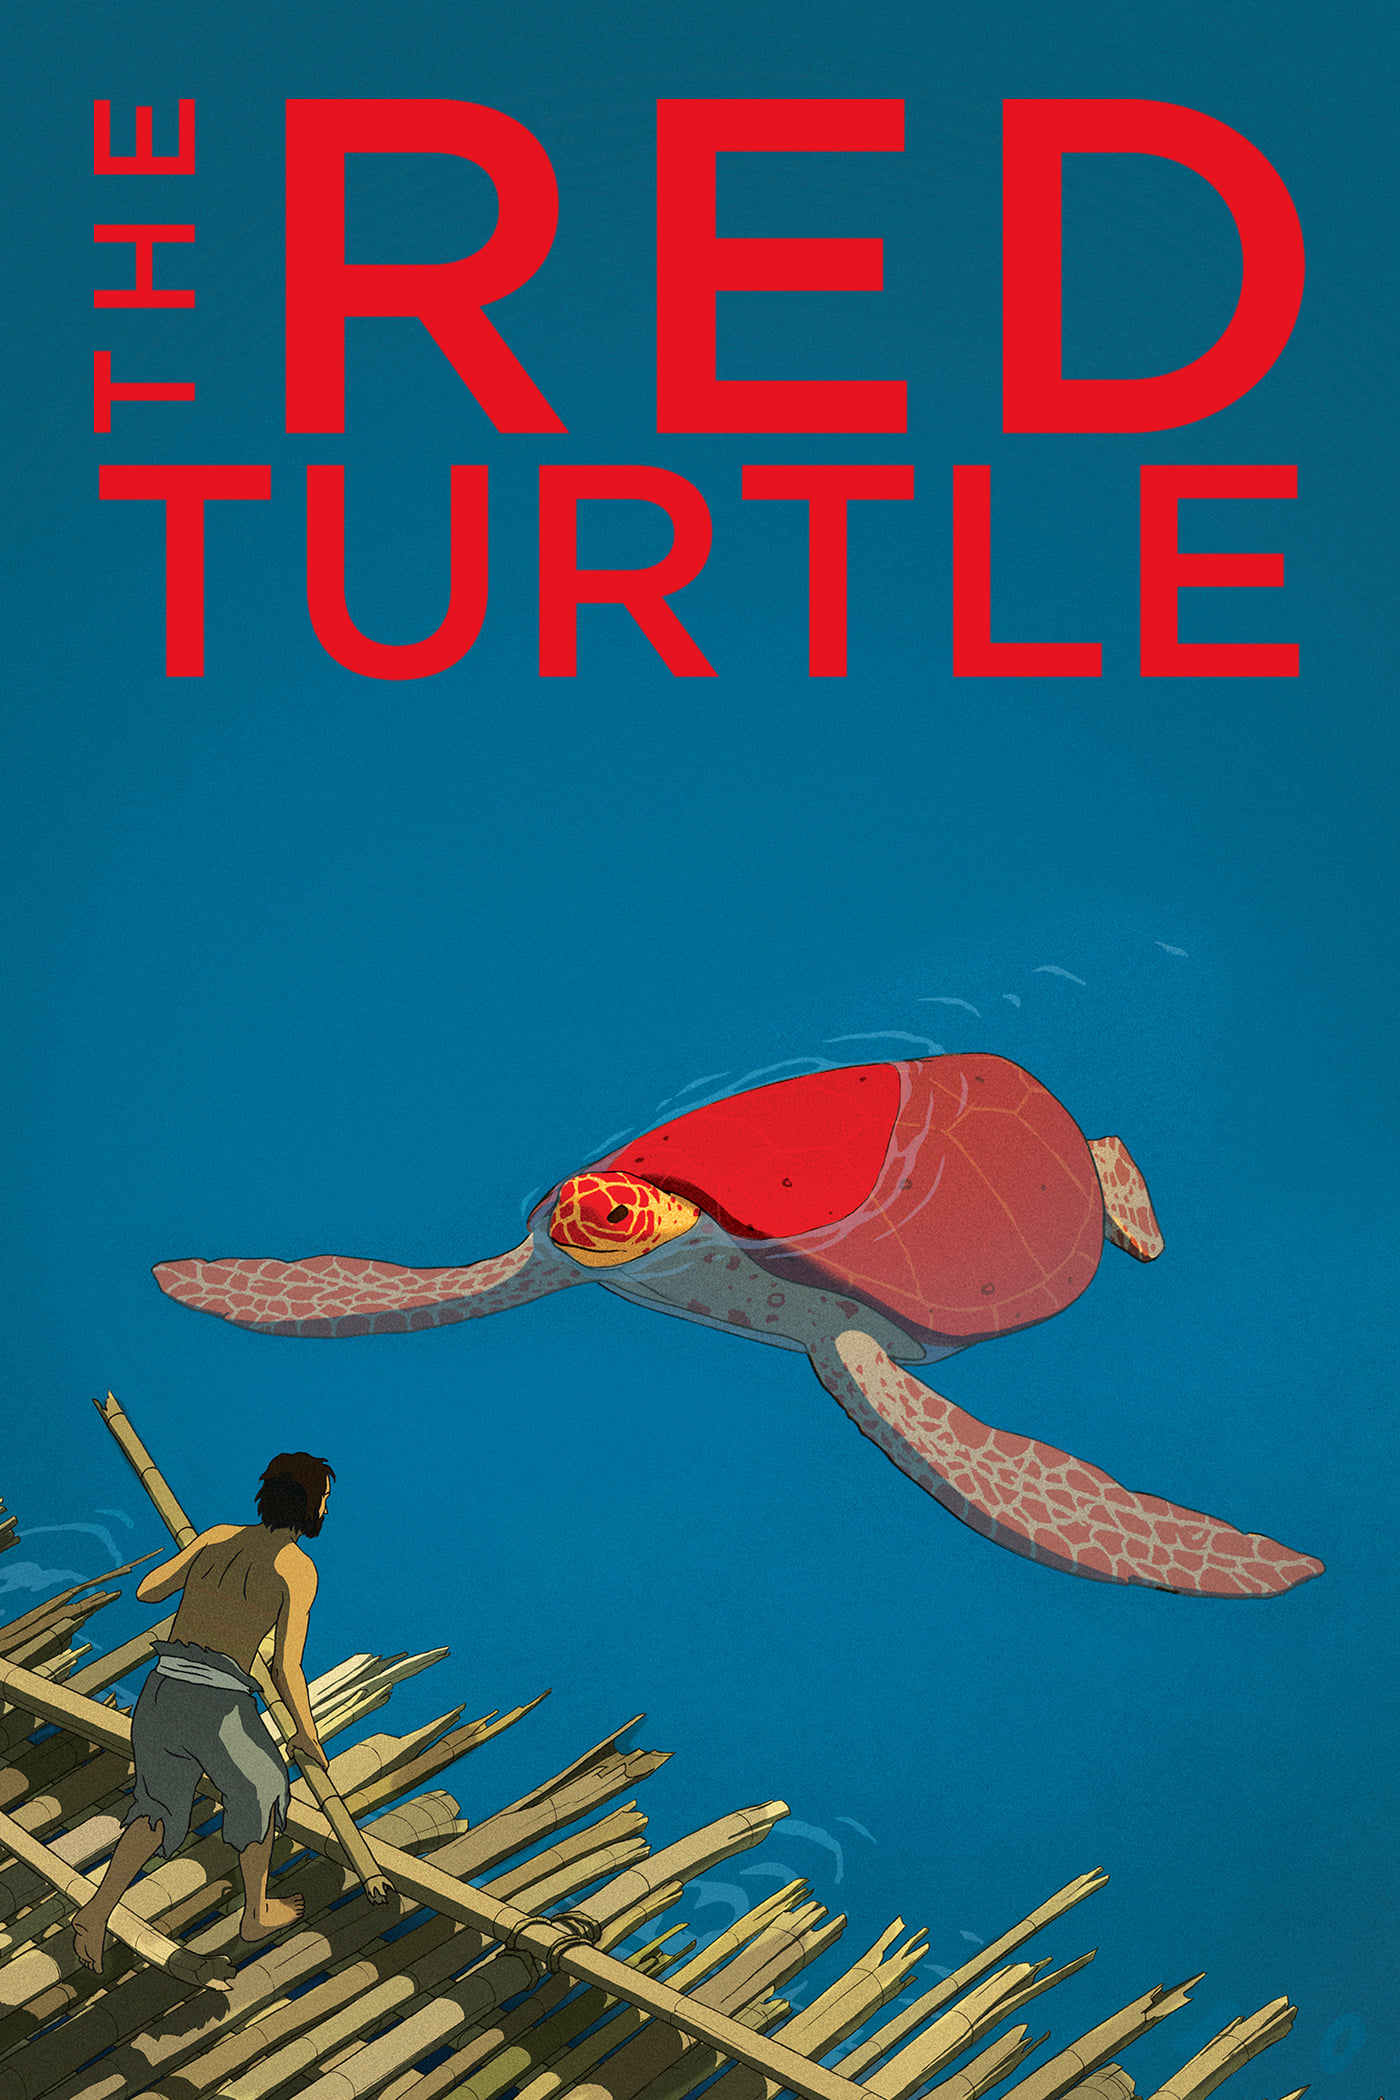 La tortuga roja